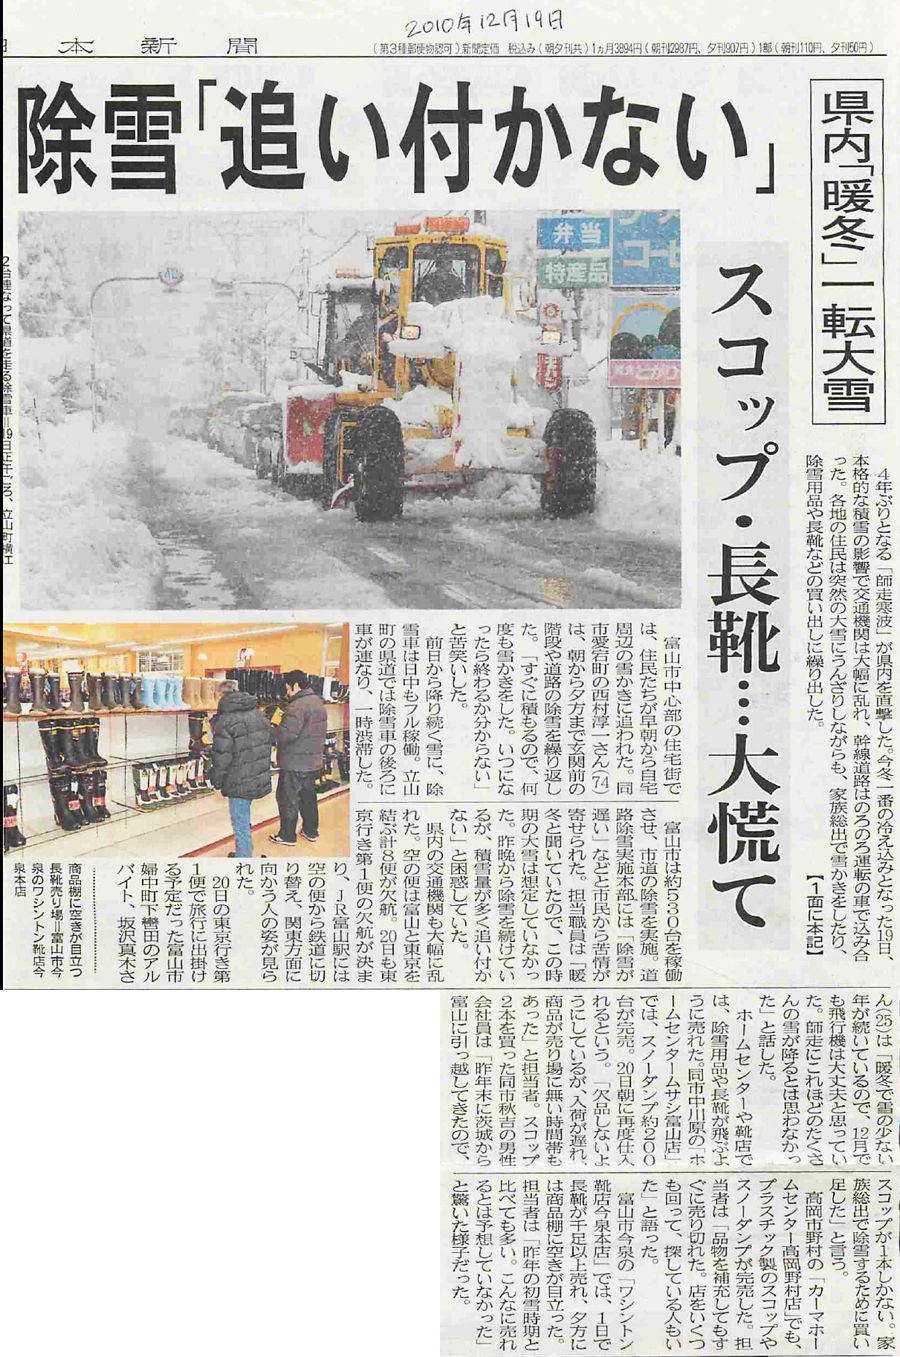 北日本新聞2010年12月19日「スコップ・長靴…大慌て」